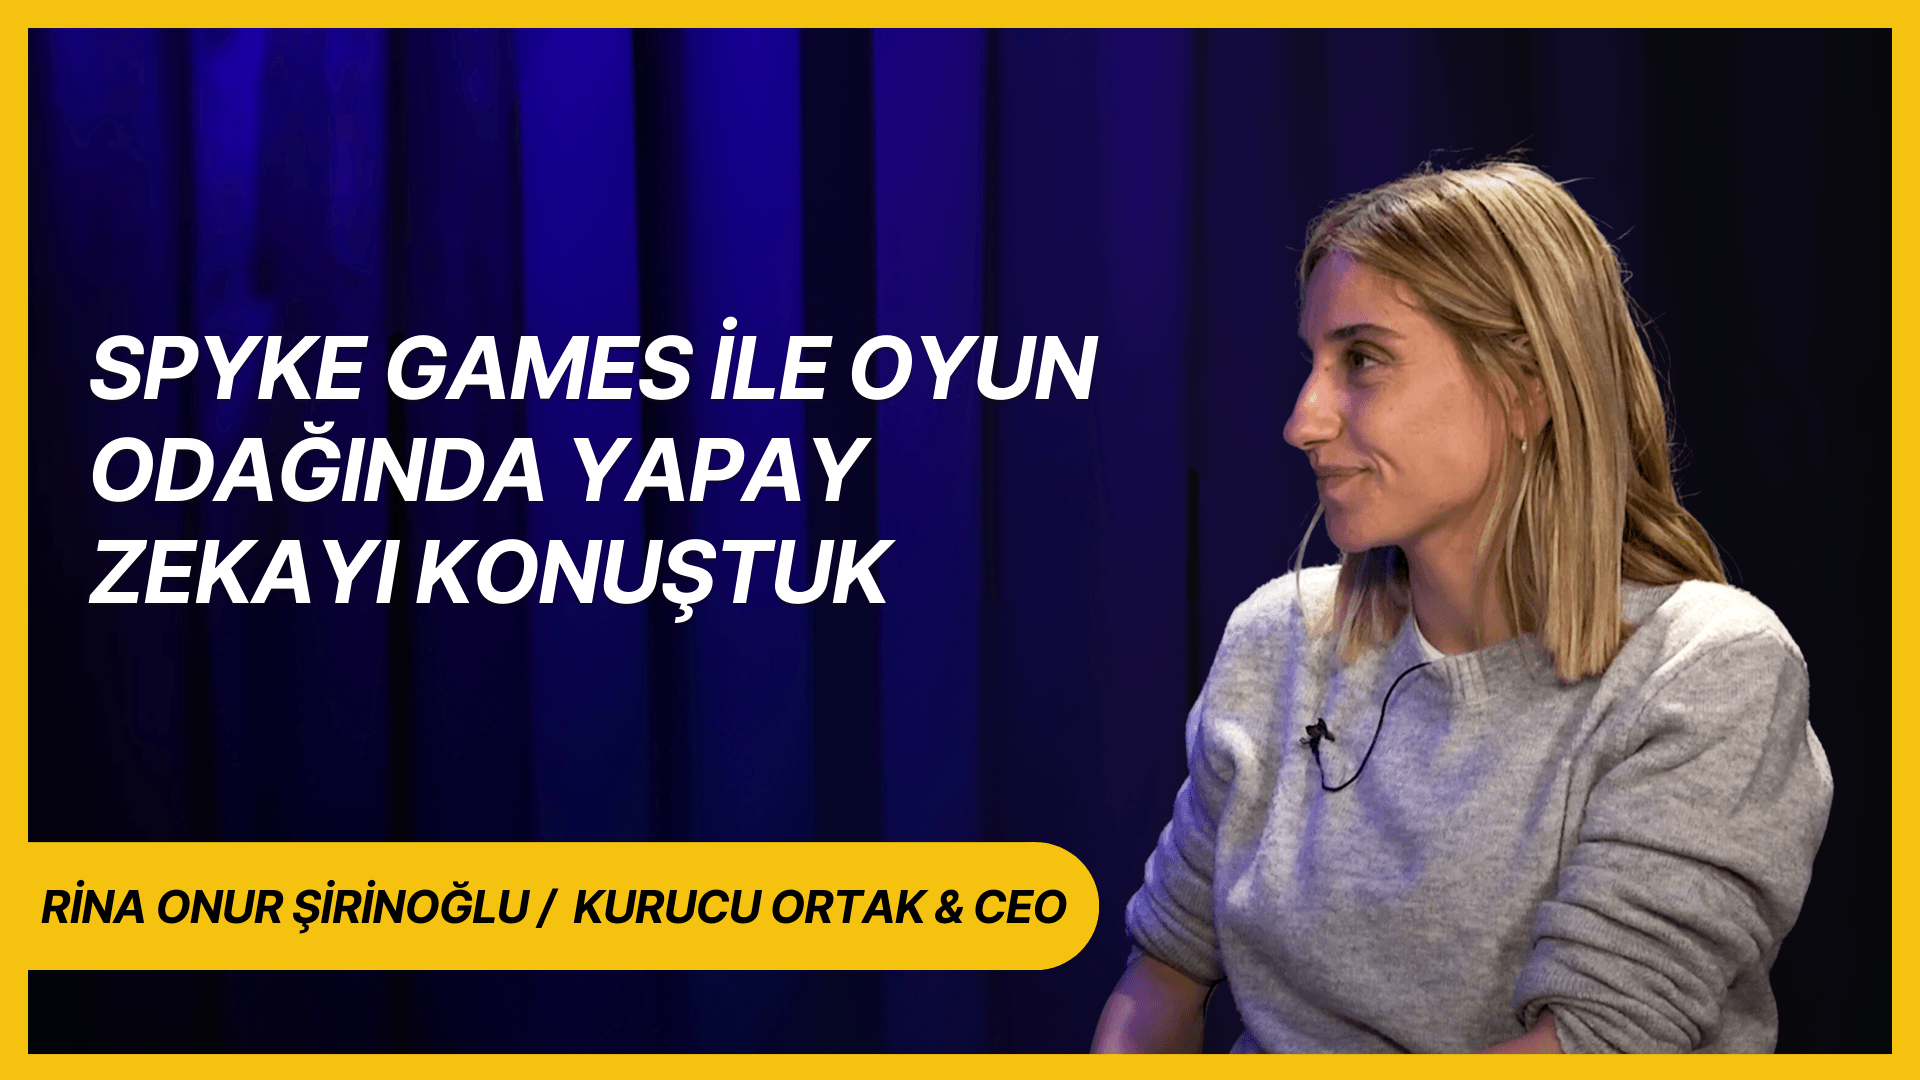 Rina Onur Şirinoğlu ile Spyke Games ve Oyun Odaklı Yapay Zeka